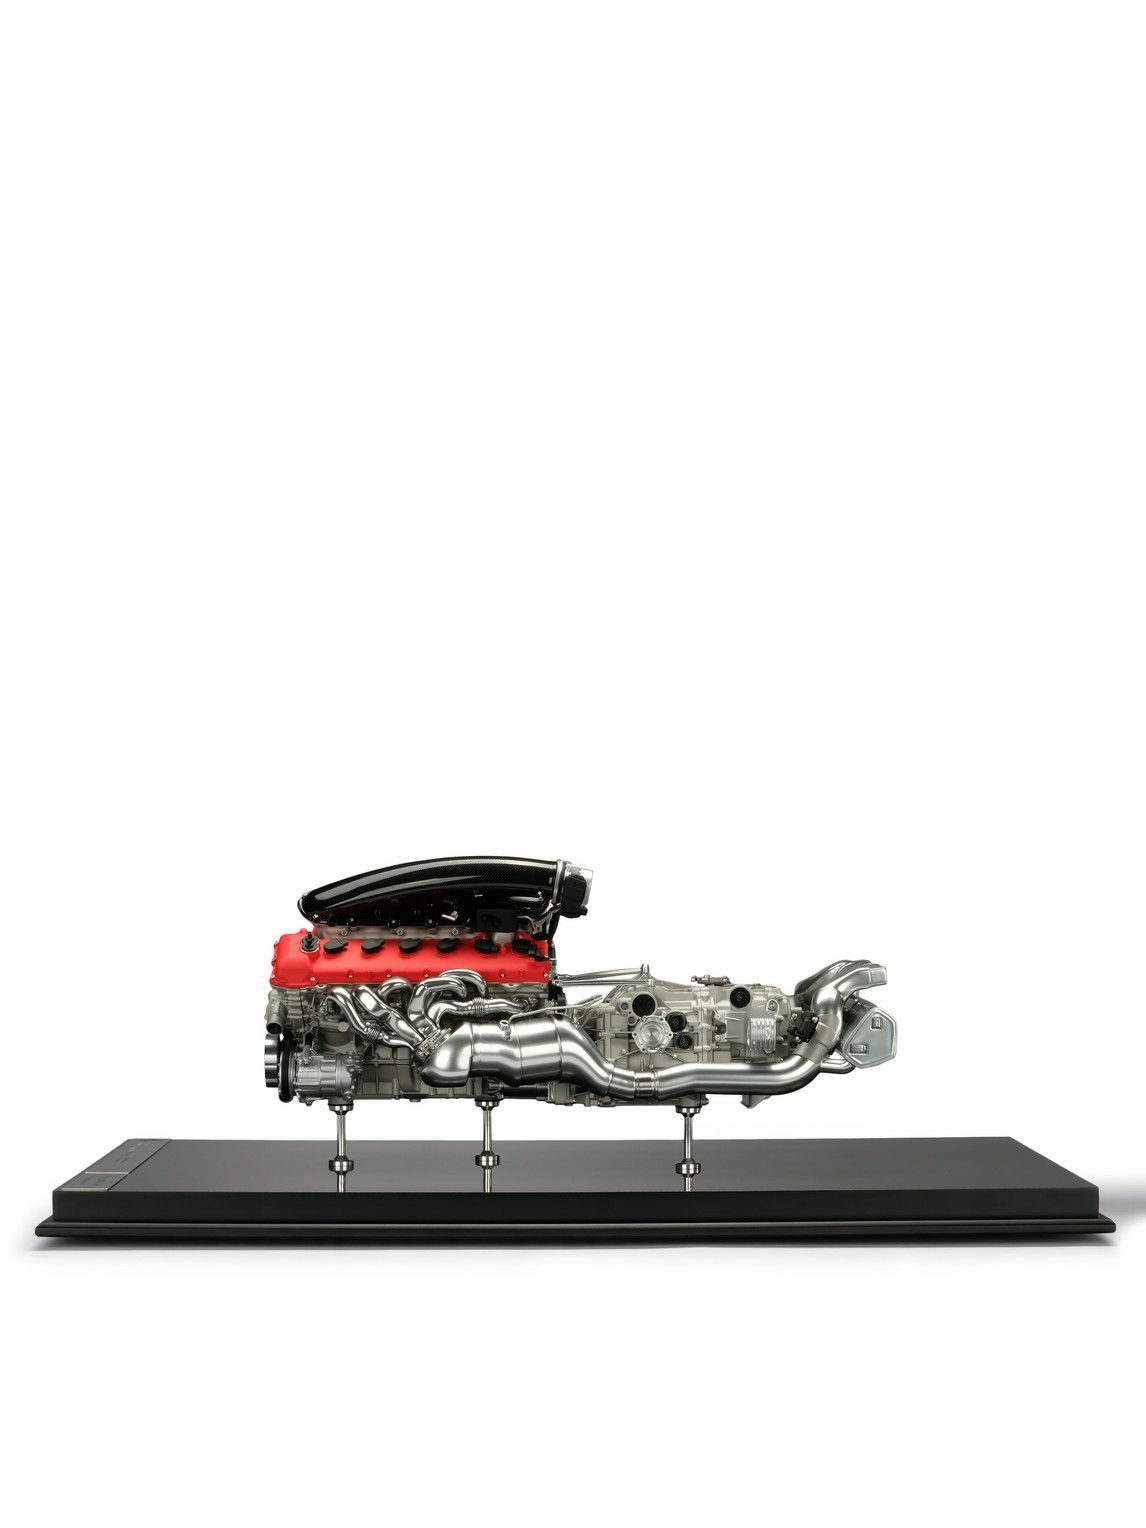 Photo: Amalgam Collection - Ferrari Daytona SP3 1:4 Model Engine and Gearbox